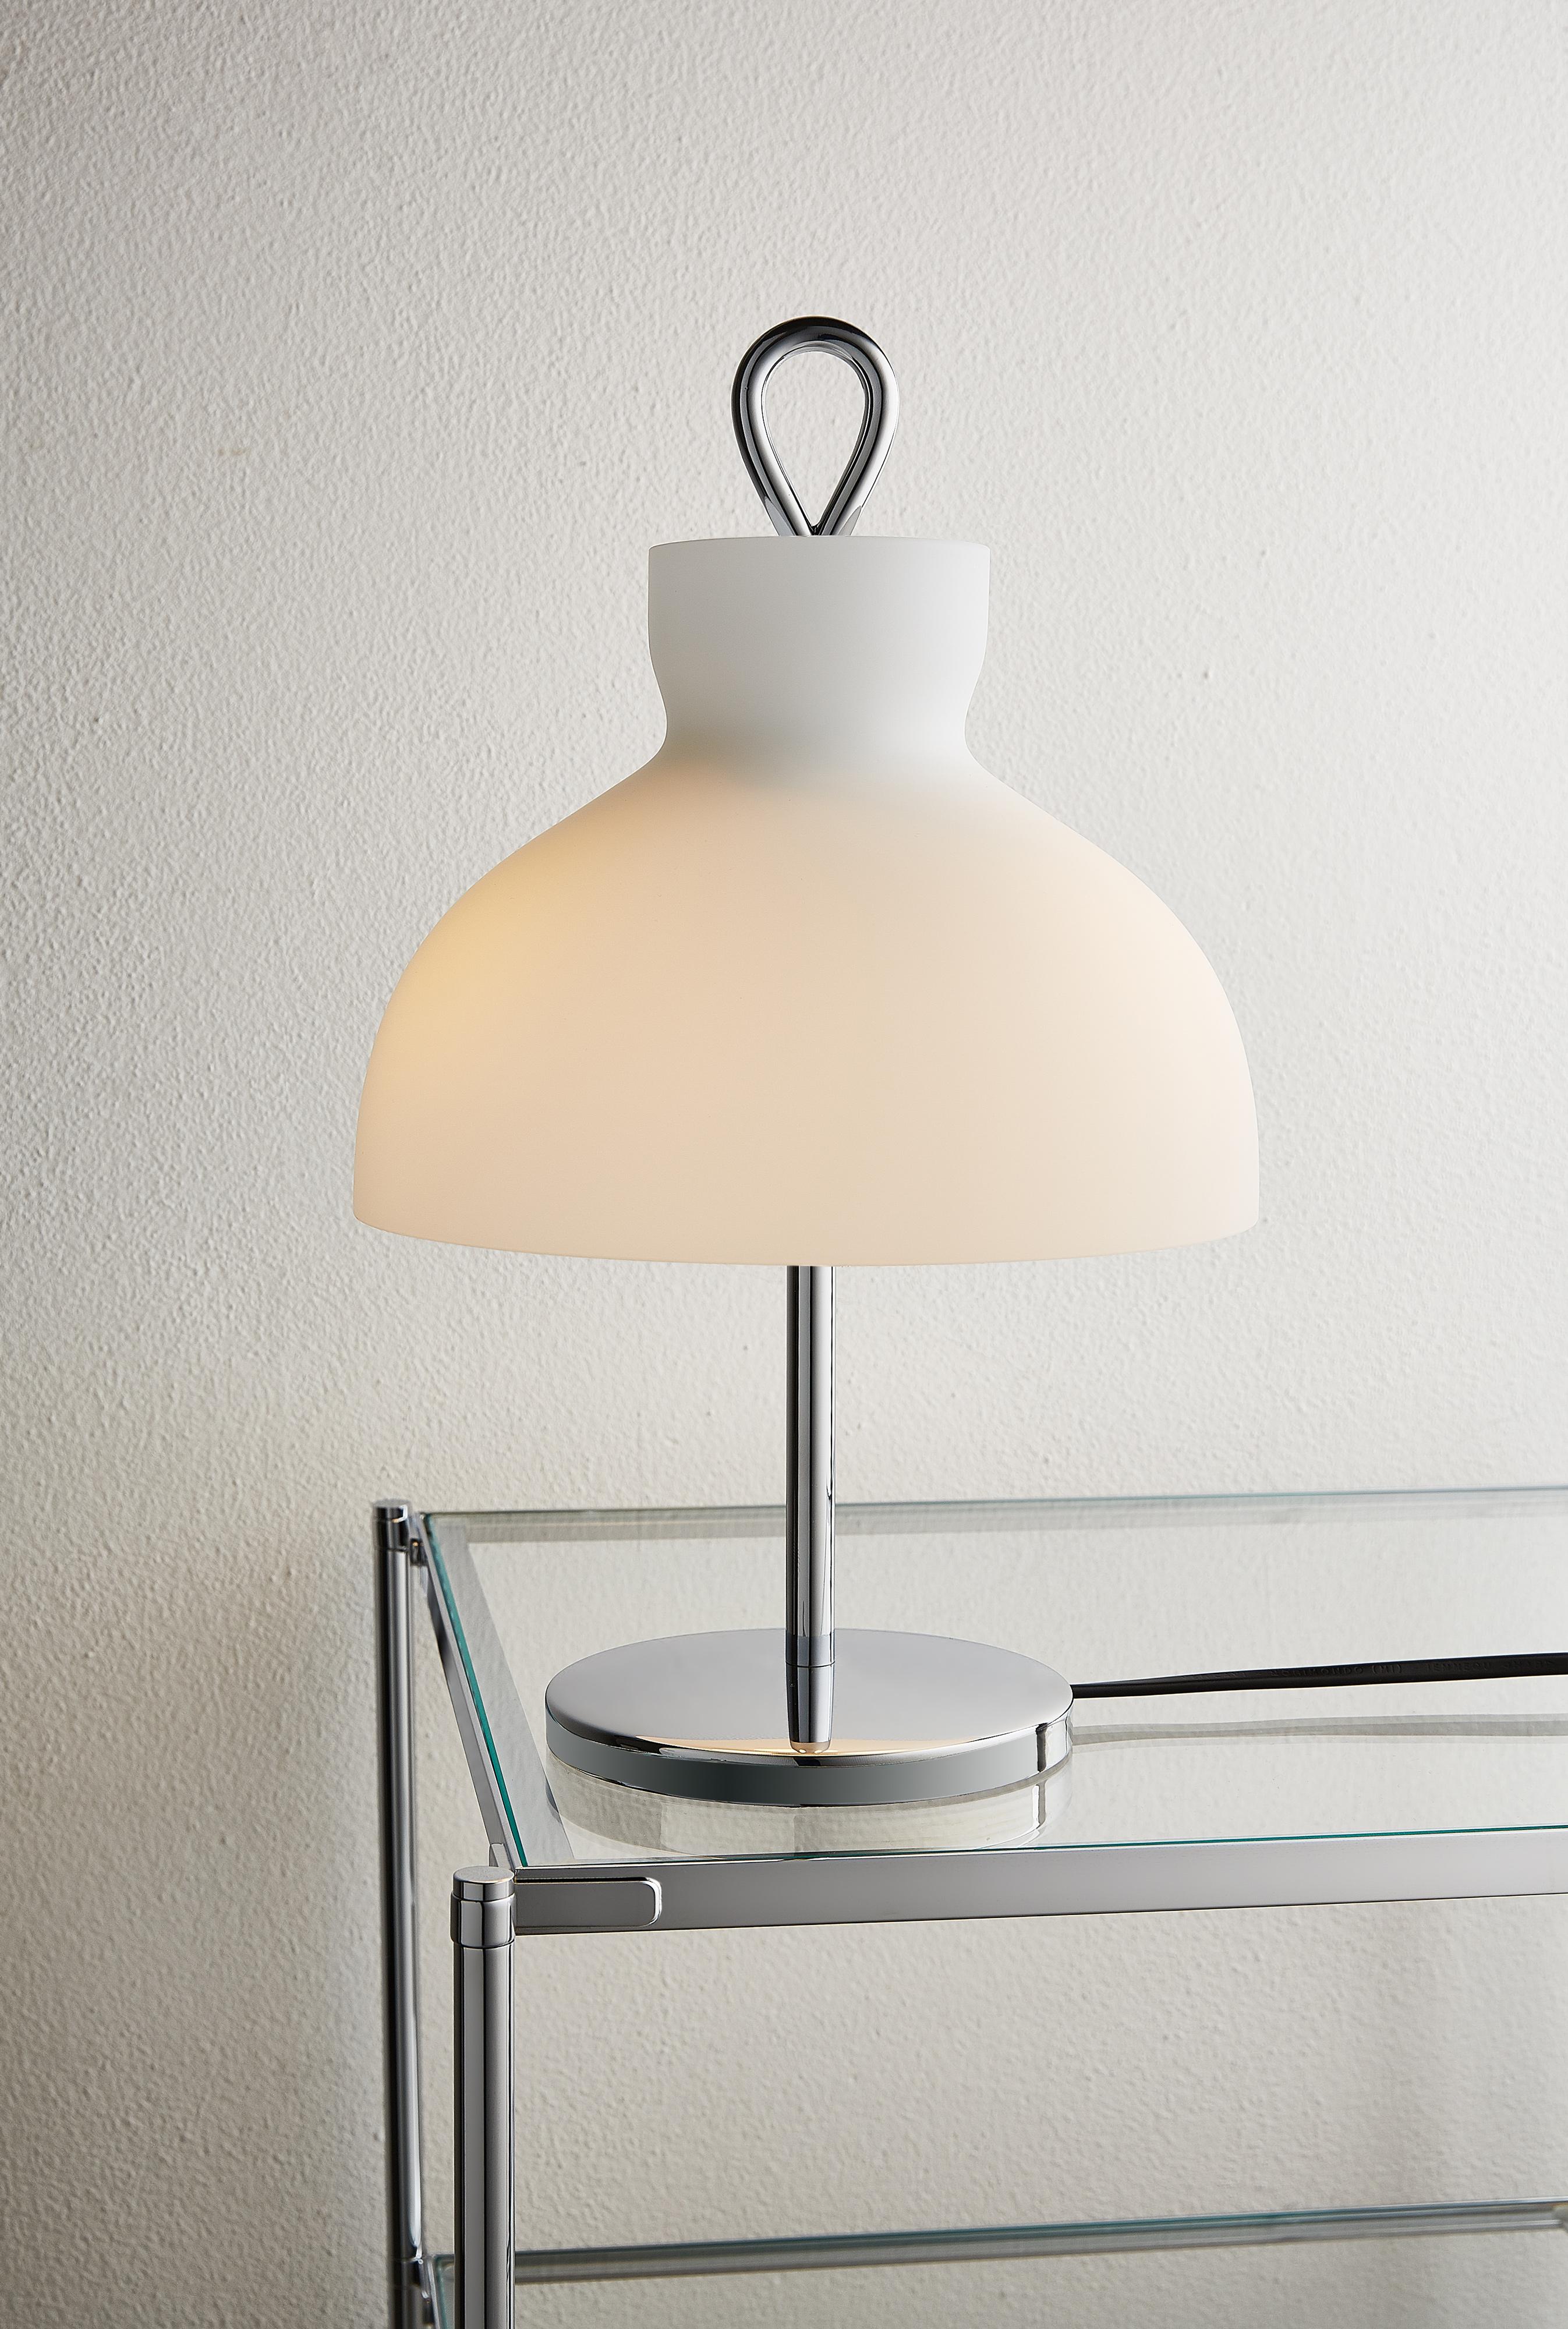 Italian Ignazio Gardella 'Arenzano Bassa' Table Lamp in Glass and Satin Nickel For Sale